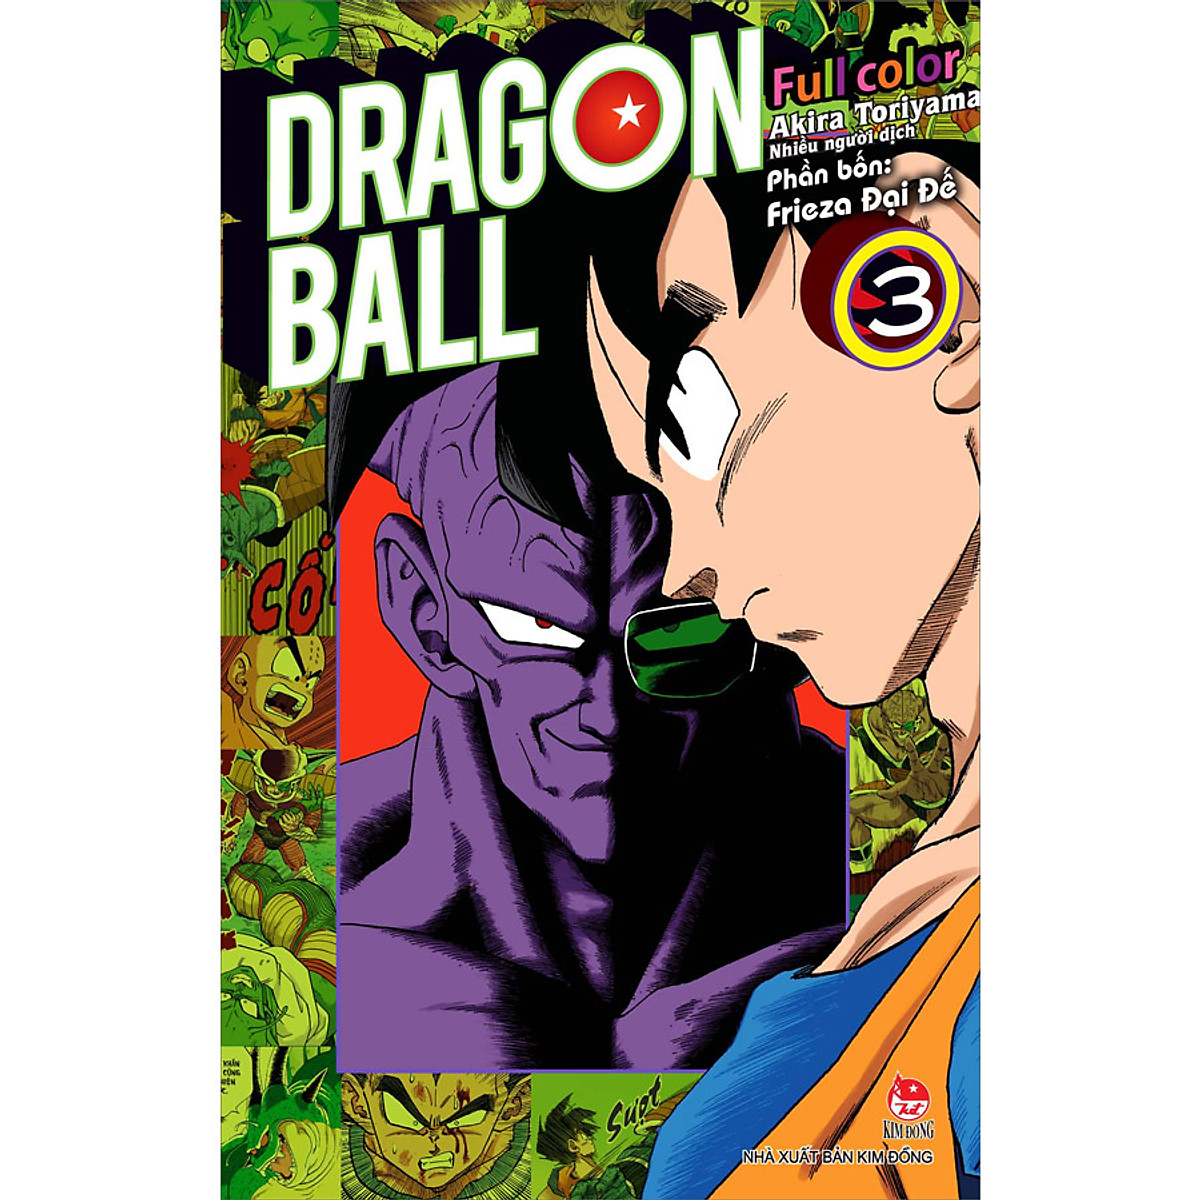 Dragon Ball Full Color - Phần Bốn: Frieza Đại Đế Tập 3 [Tặng Ngẫu Nhiên 1 Trong 2 Poscard Nhân Vật]